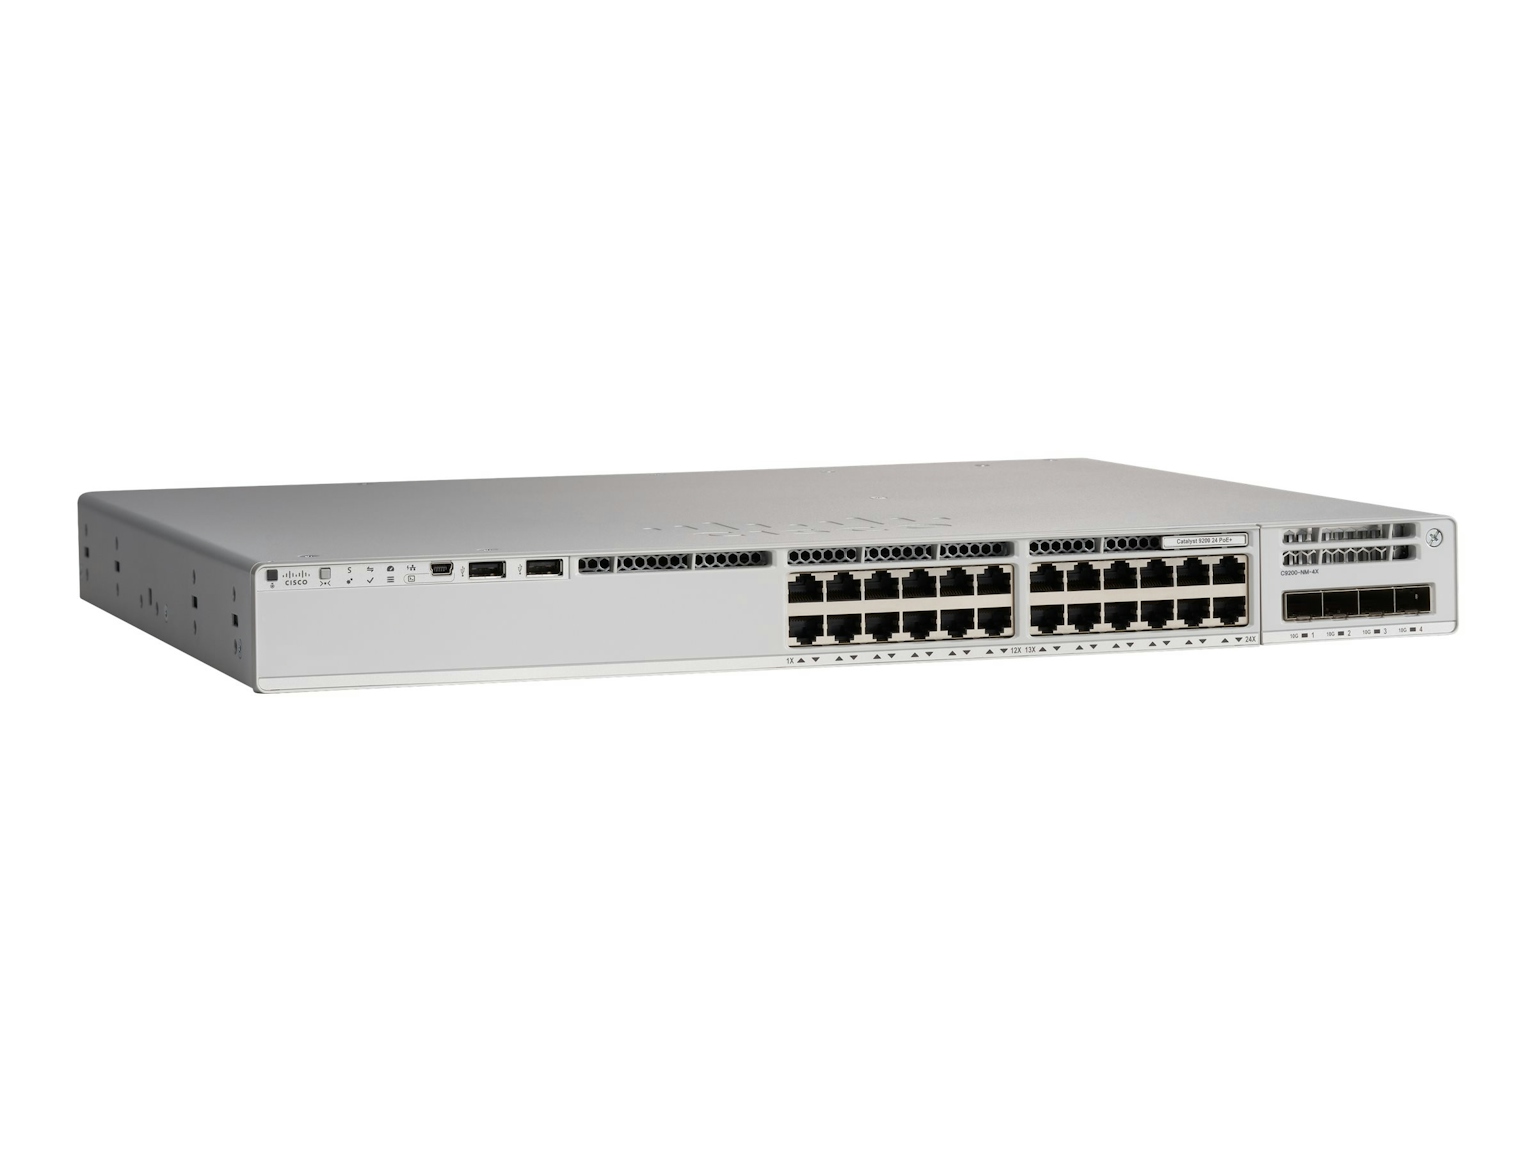 c9200l-24p-4x-e-Cisco-1